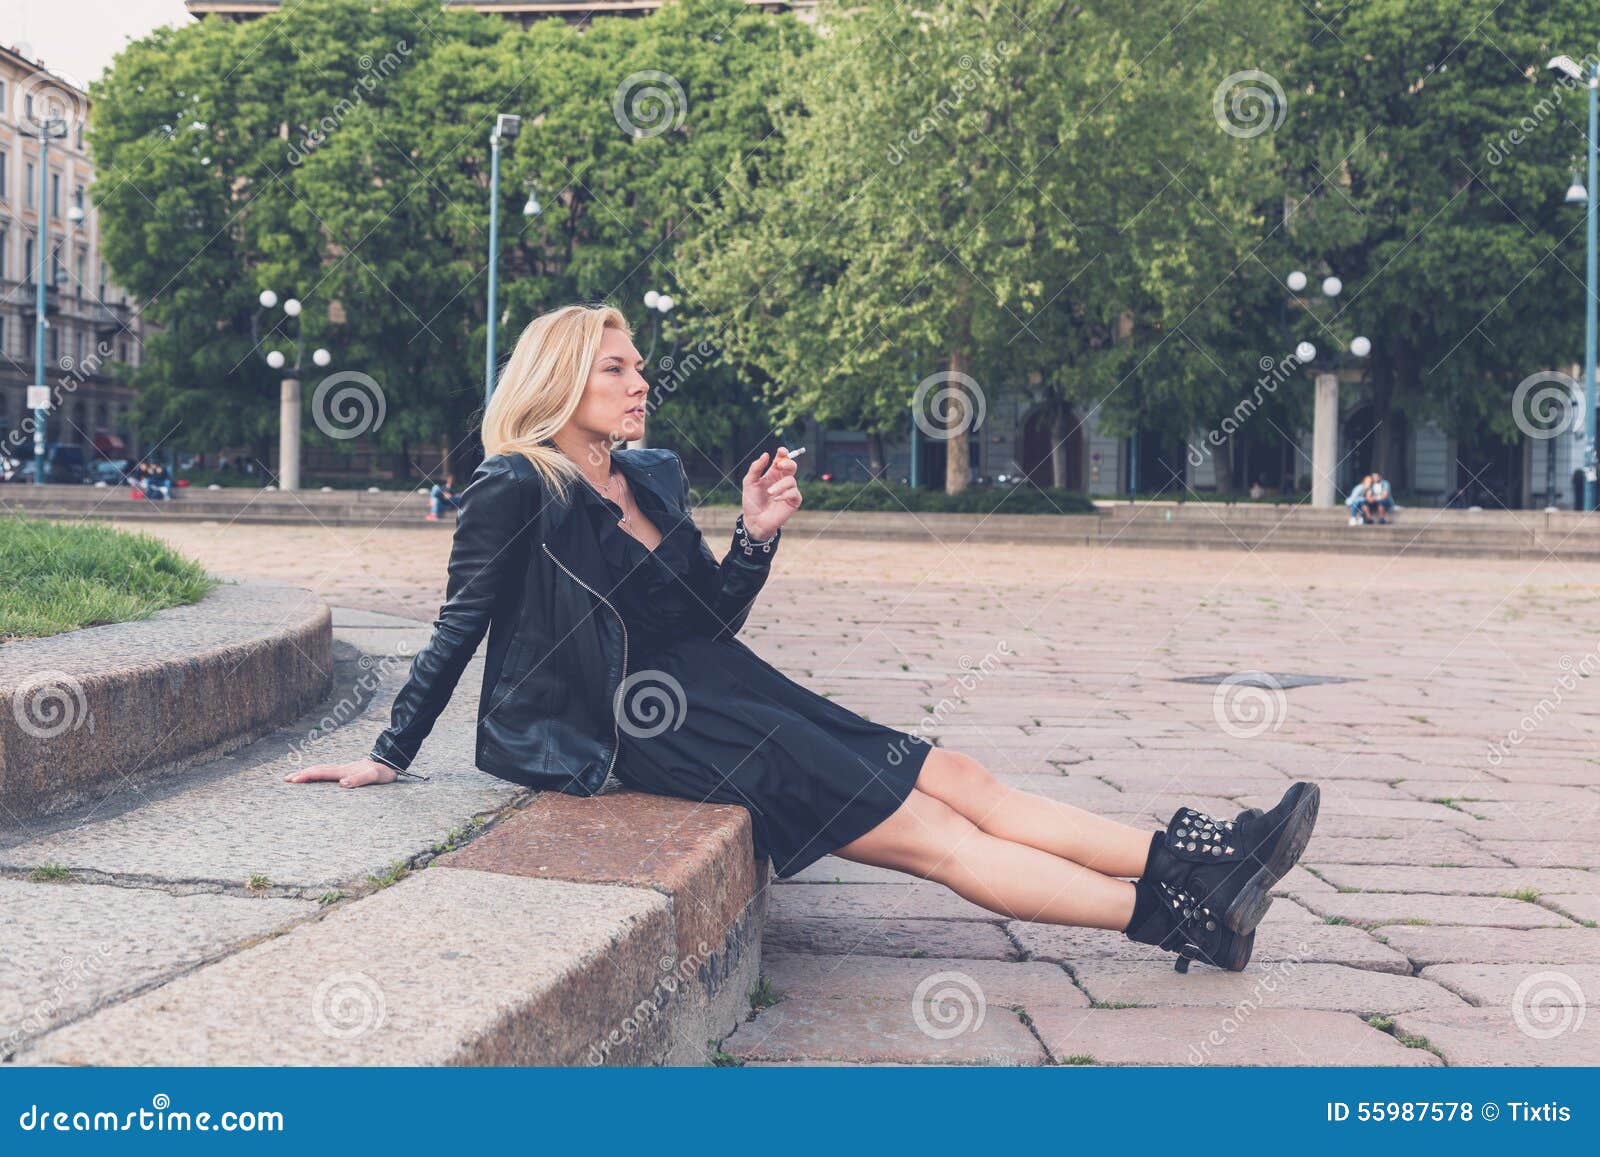 Группа сентябрь женщина курит на лавочке. Девушка курит на улице фотосессия. Курящая блондинка на улице. Девушка курит на скамейке. Женщина курит на лавочке на многолюдной улице.